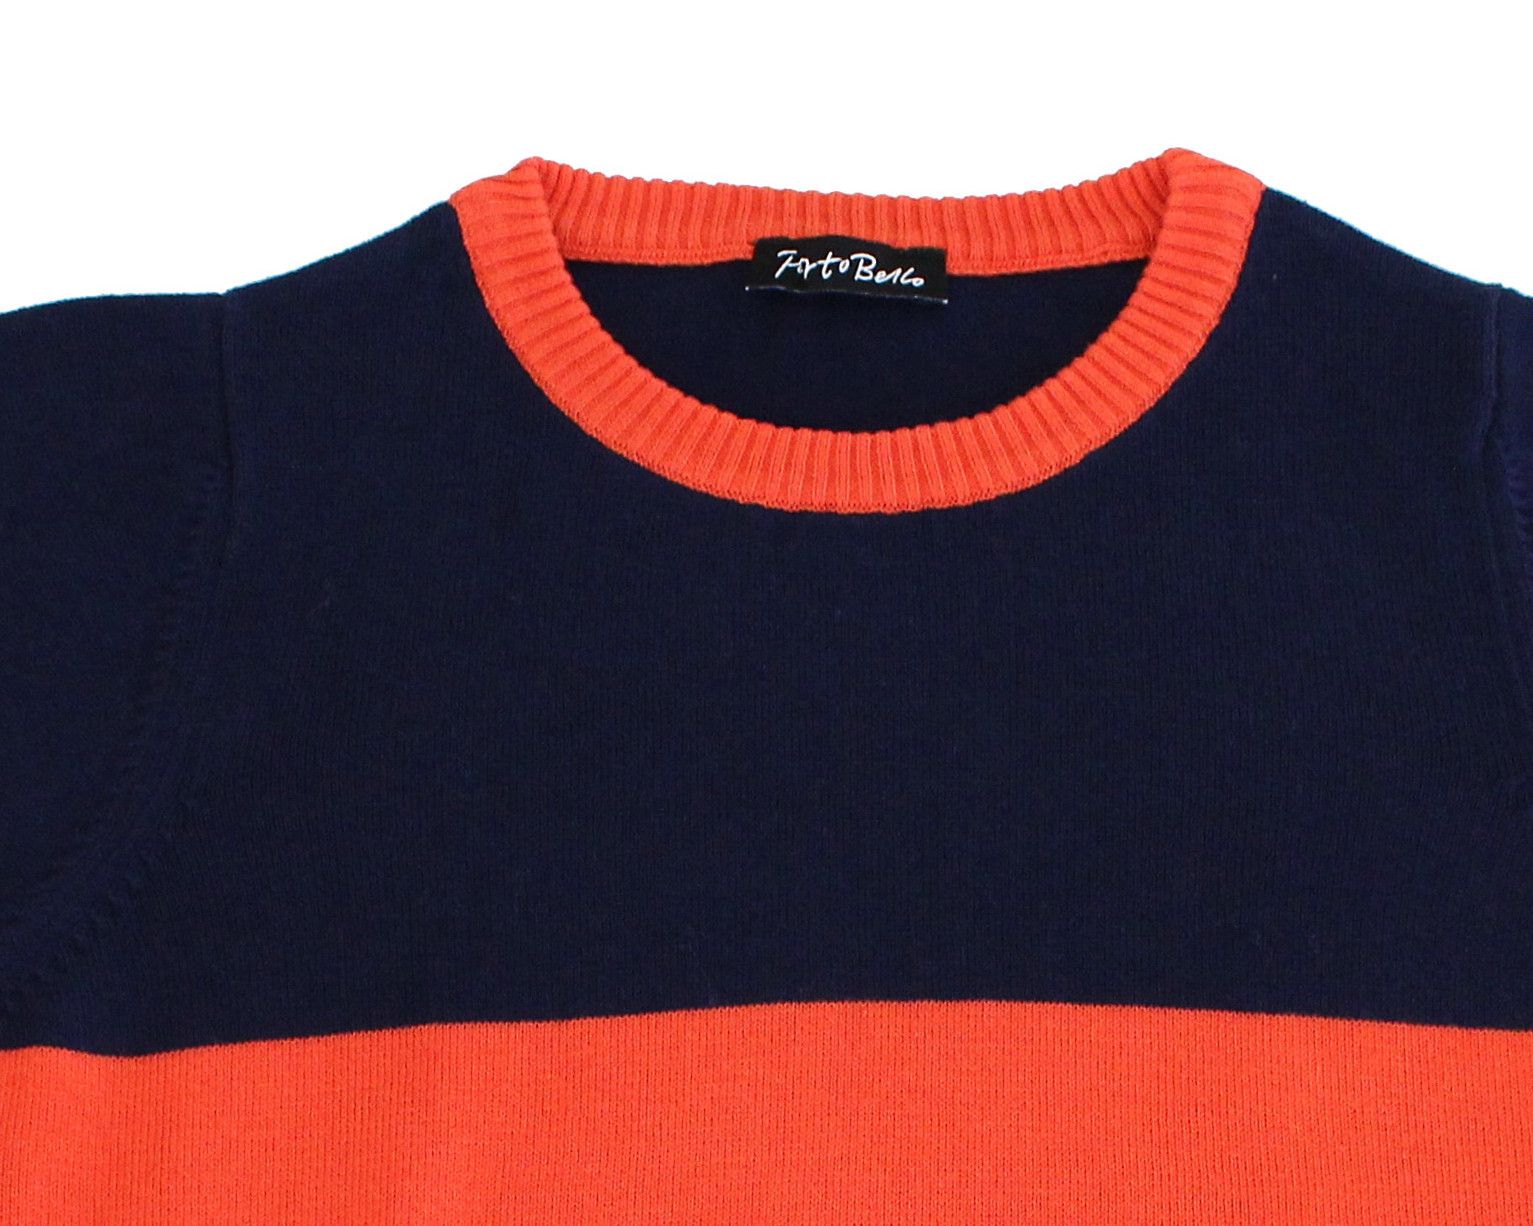 Portobello round neck Sweater For Boys - Buy Portobello round neck ...